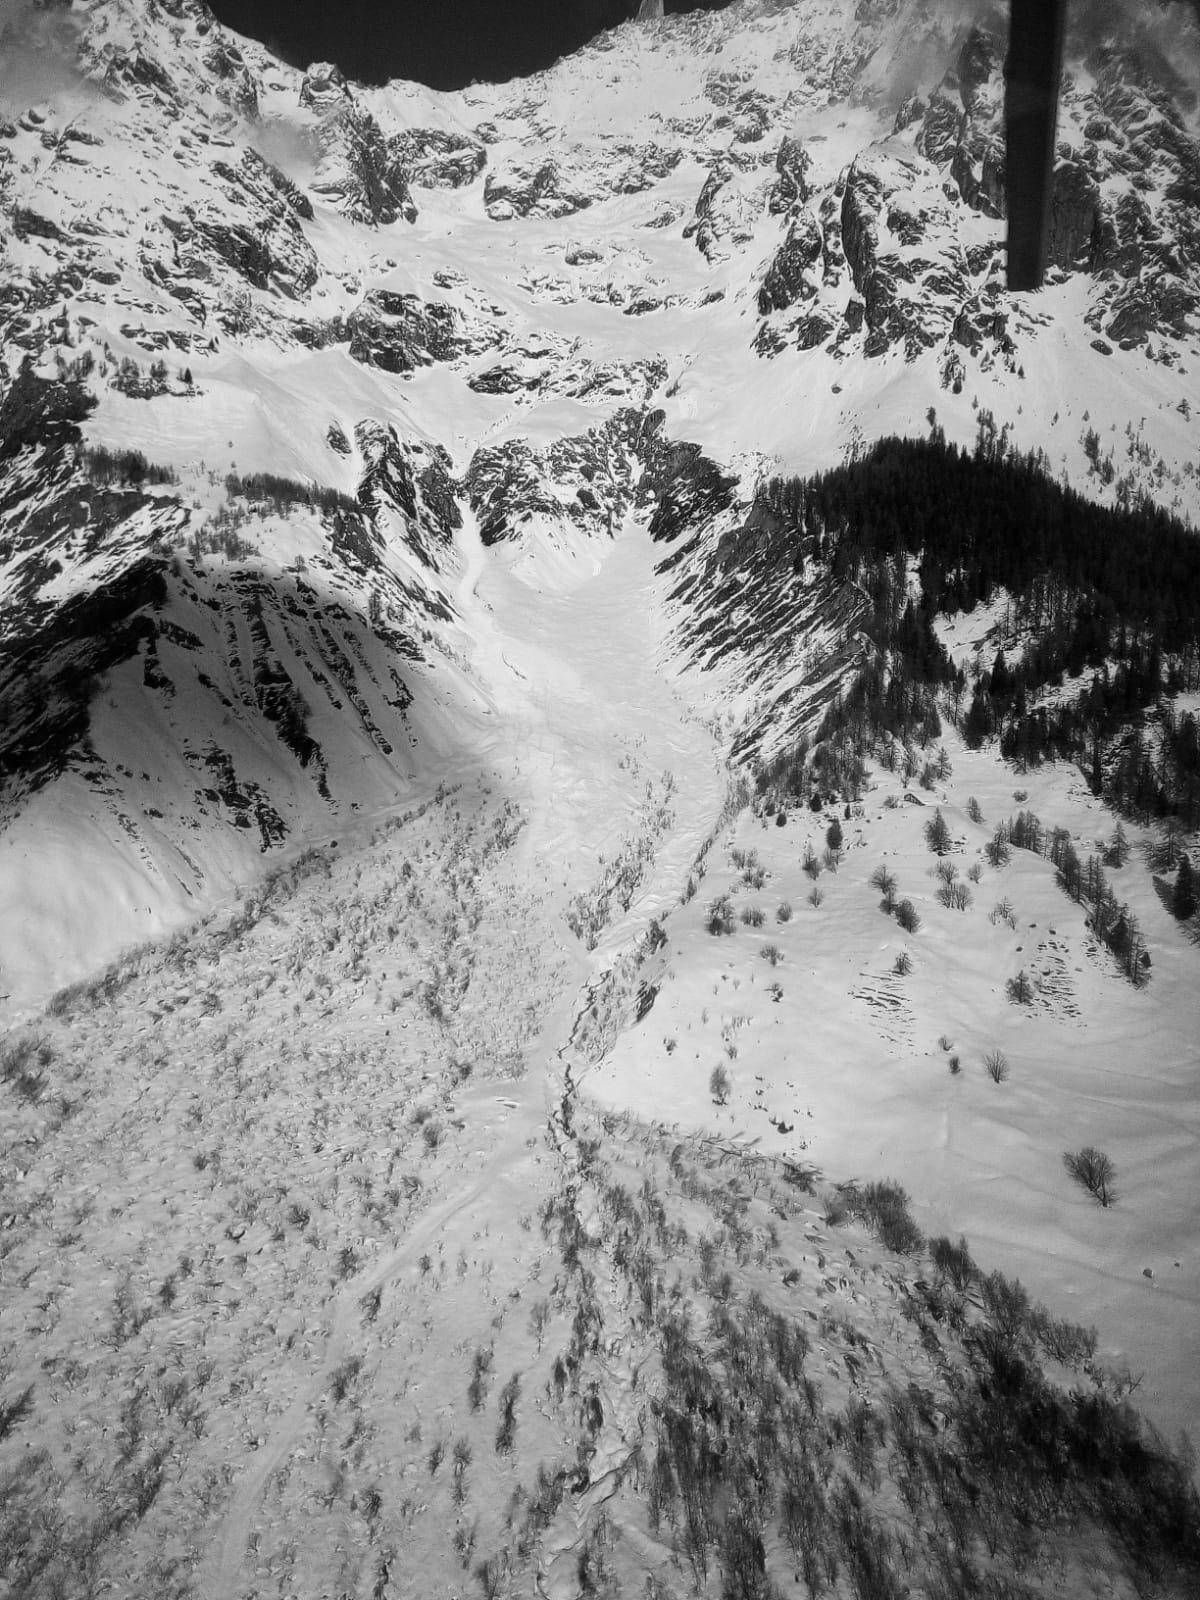 Pericolo valanghe: chiusa la Val Ferret il 31 gennaio